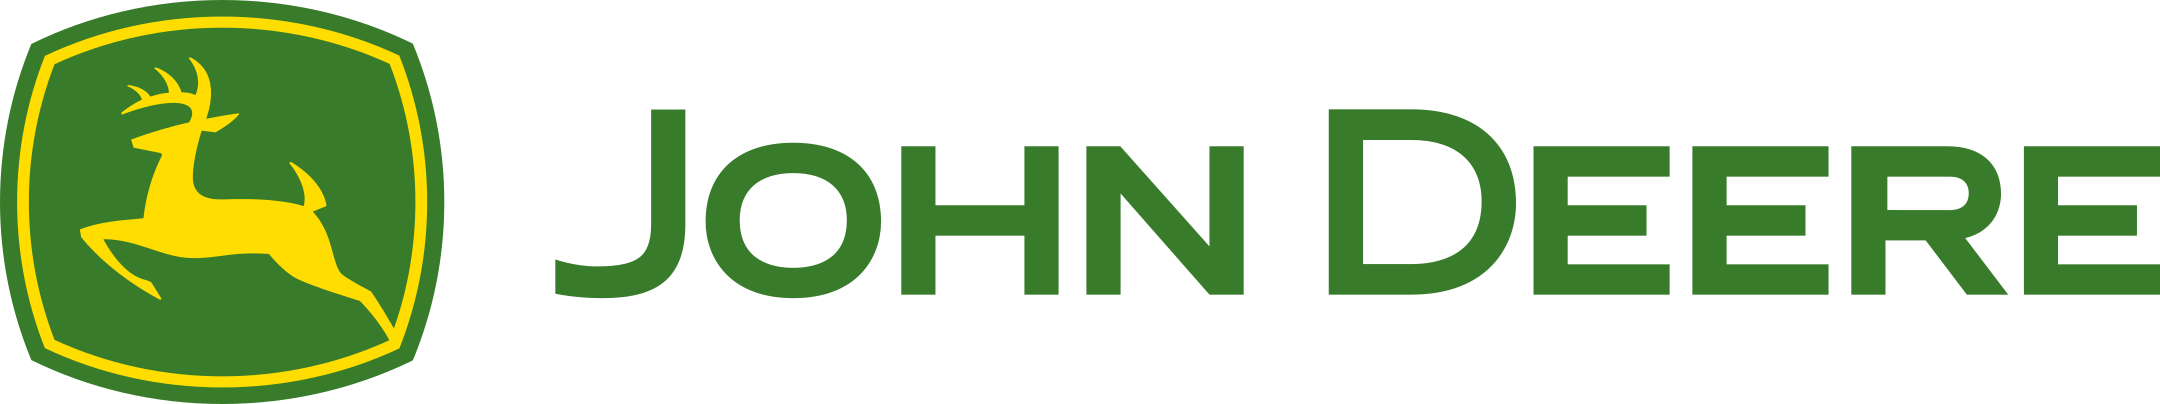 john-deere-logo-1.png